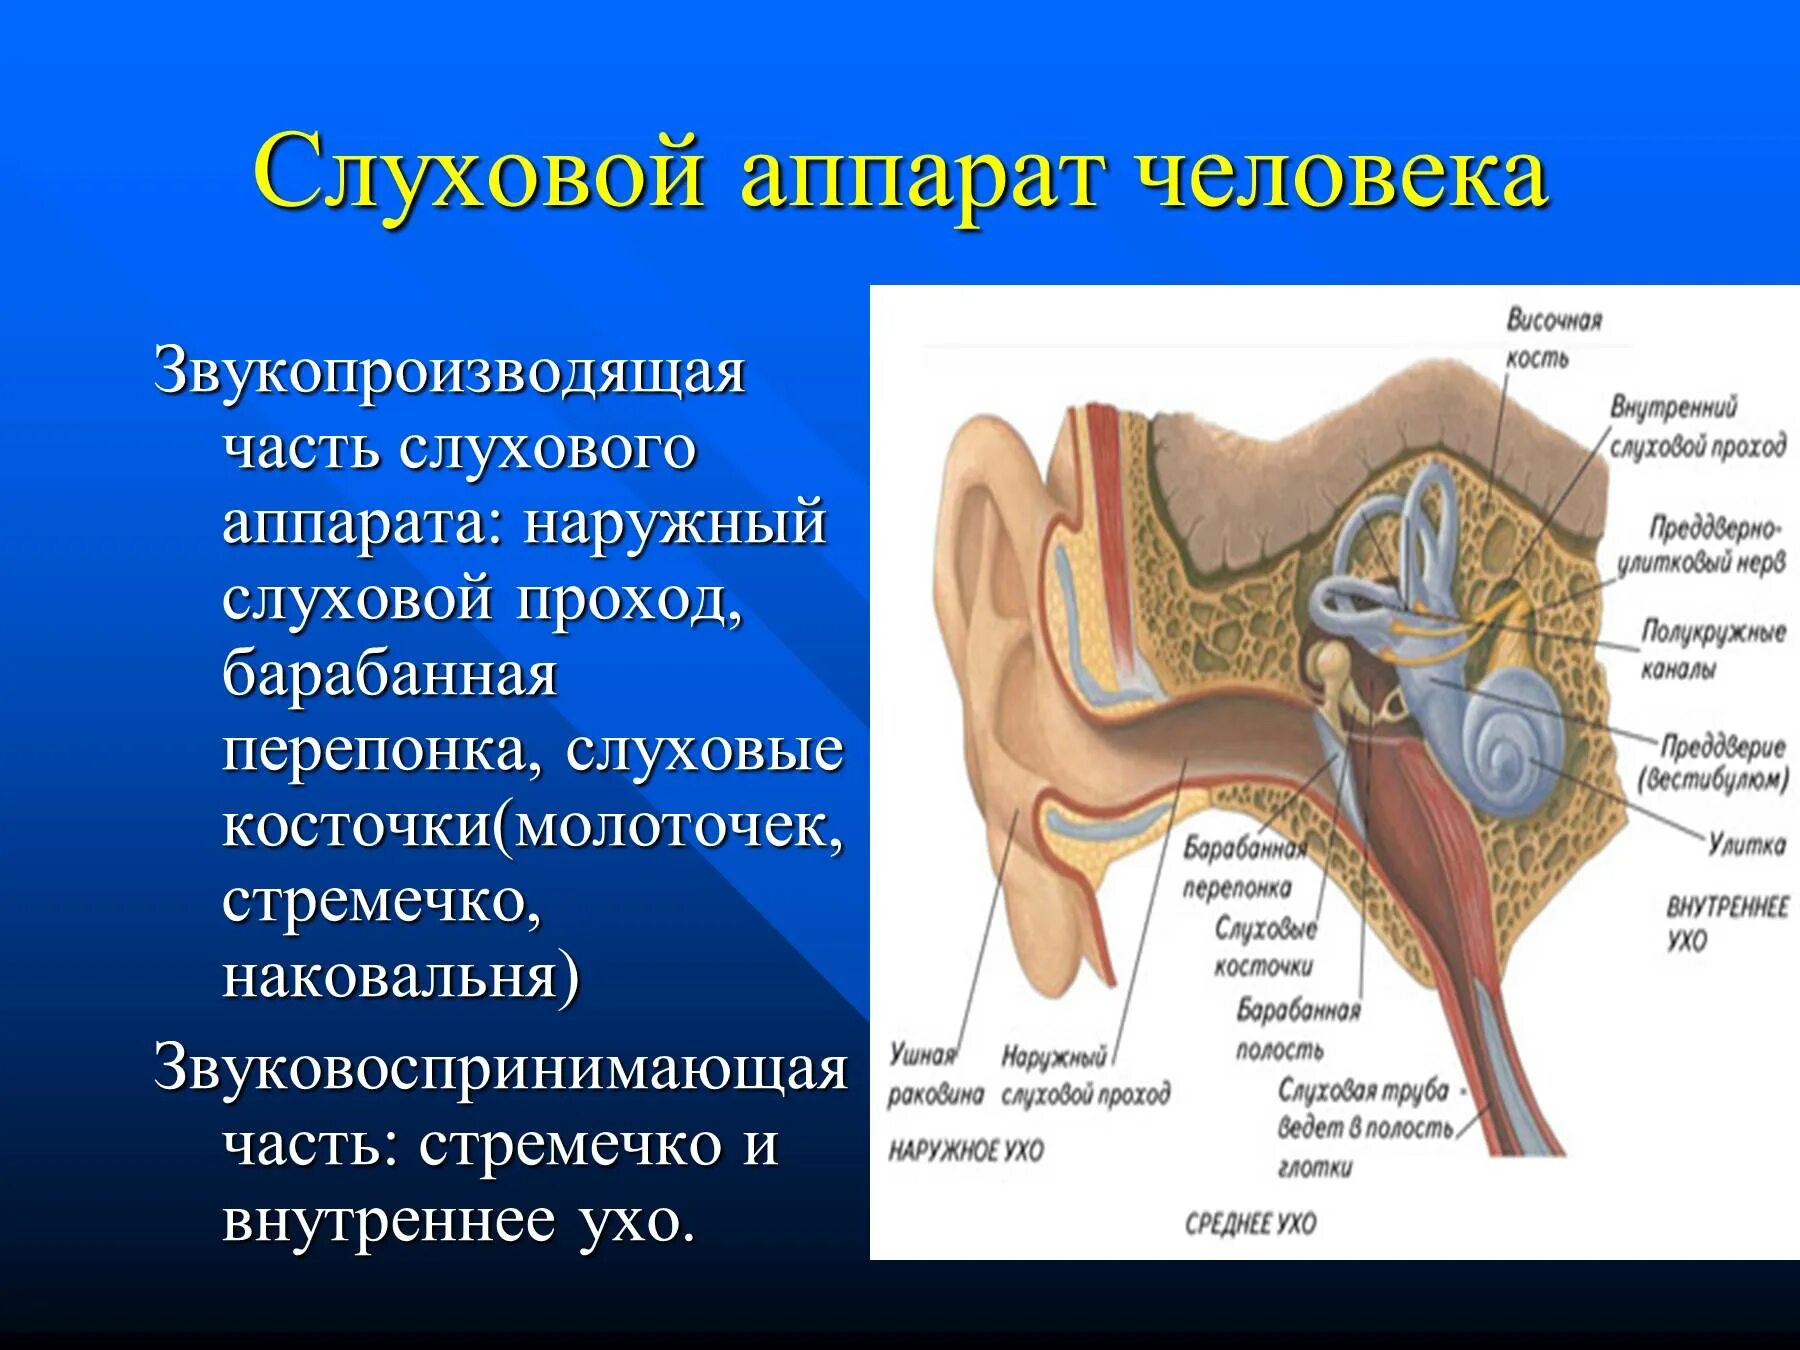 Строение слухового органа человека. Наружный слуховой аппарат анатомия. Слуховой аппарат строение анатомия. Функции наружного слухового аппарата. Строение слухового аппарата человека.